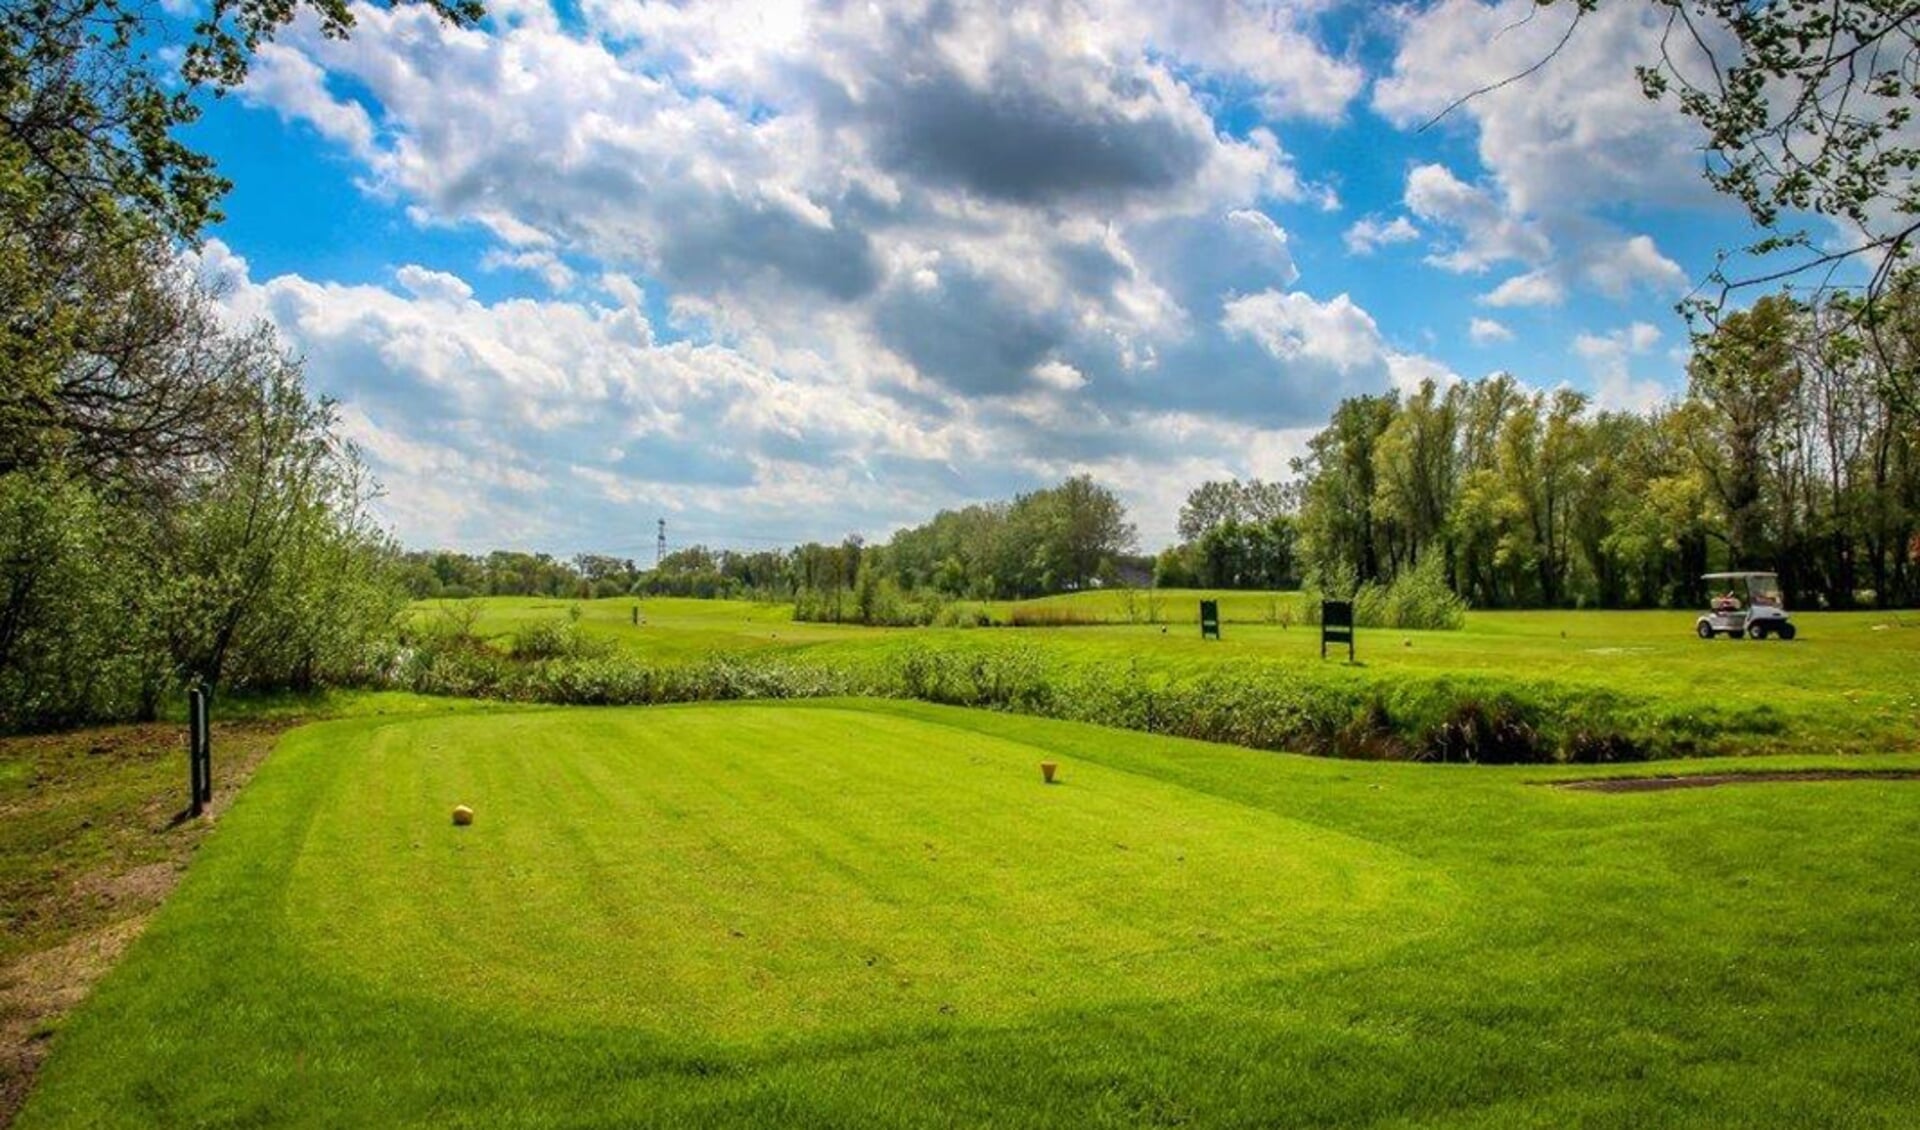 Golfbaan De Lage Mors ligt prachtig in het unieke Twickelse coulisselandschap.